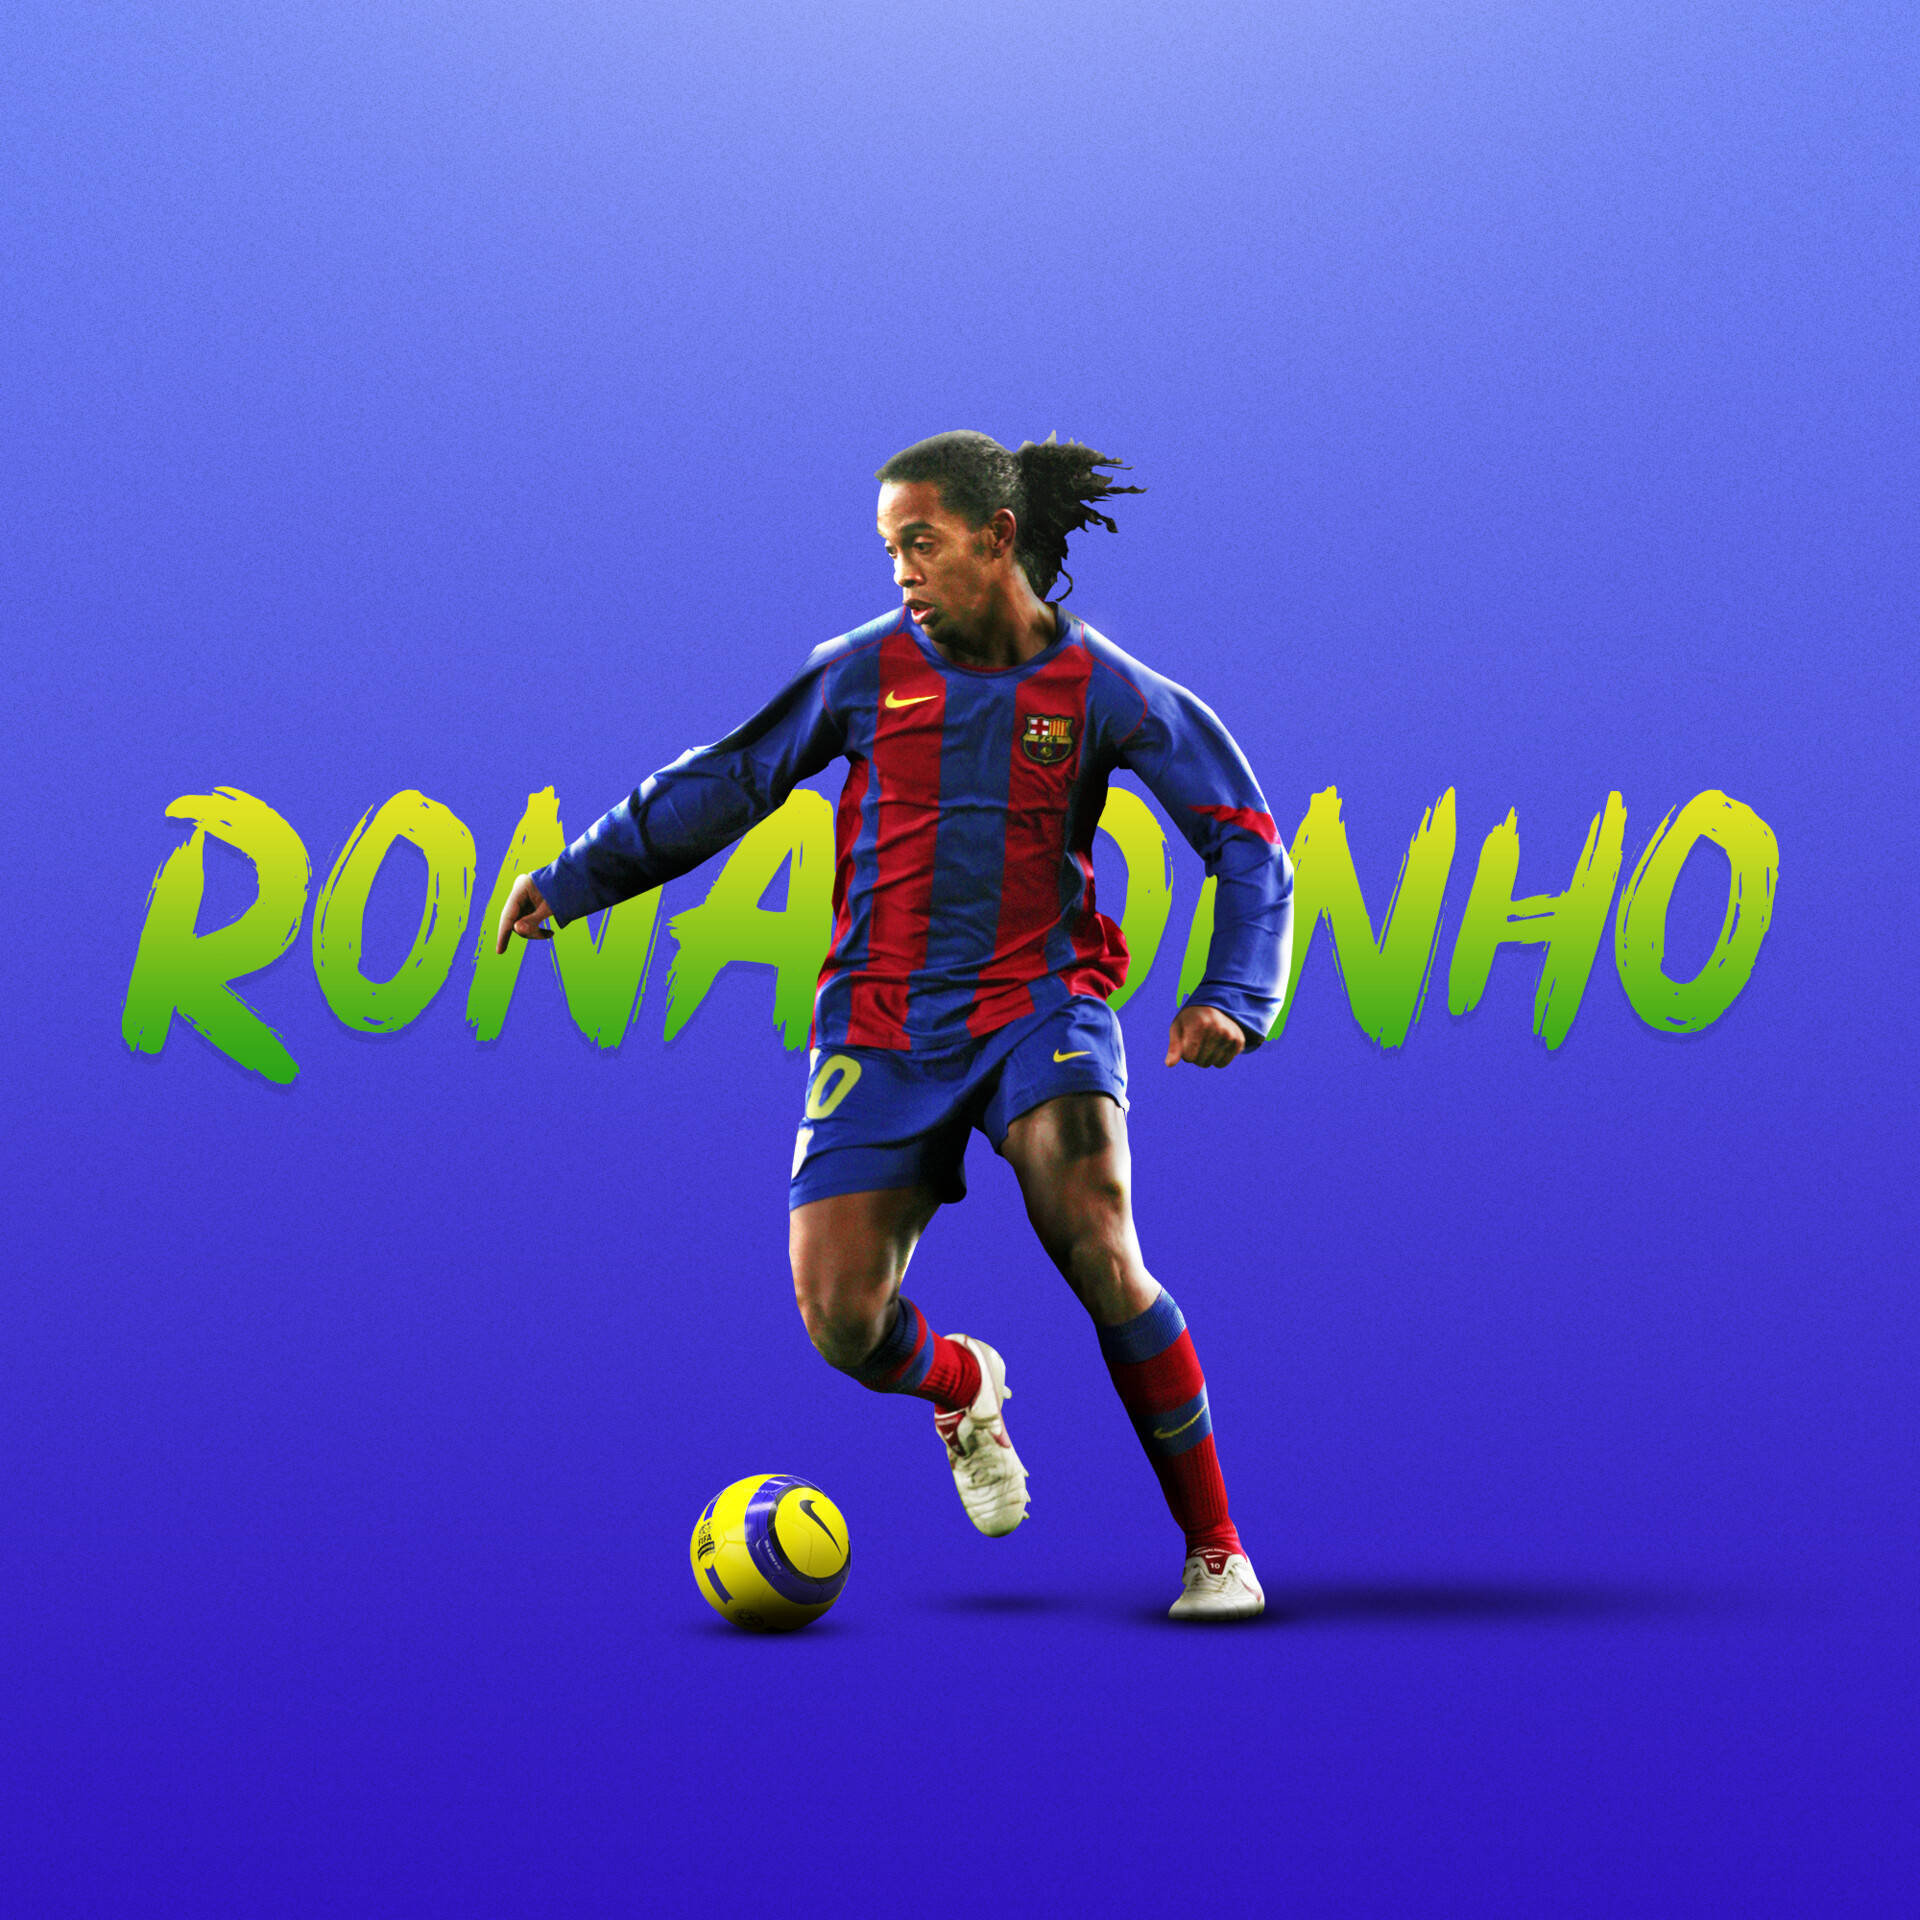 Ronaldinho: Không thể bỏ qua bộ sưu tập hình ảnh của cựu tiền đạo tài hoa người Brazil - Ronaldinho. Những khoảnh khắc vô cùng đặc biệt và huyền thoại của anh sẽ khiến bạn say mê.